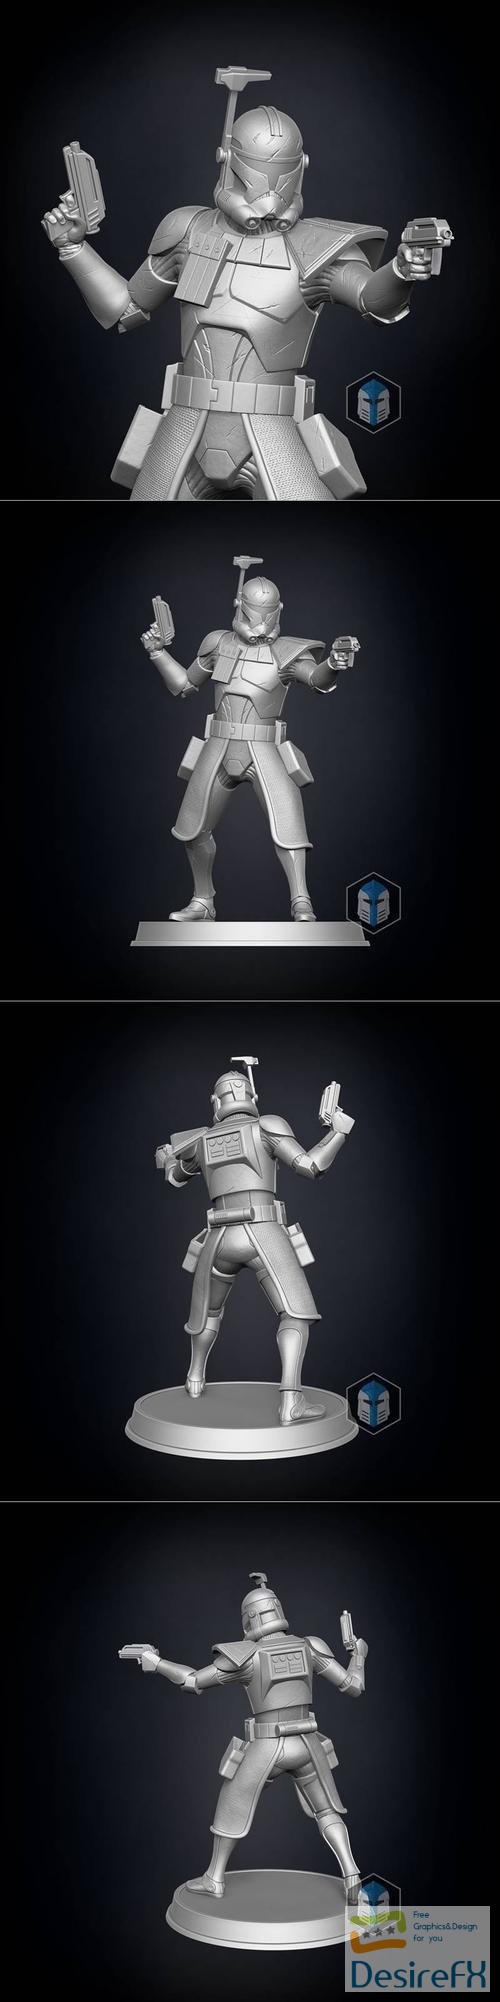 Captain Rex Figurine - Guardian – 3D Print